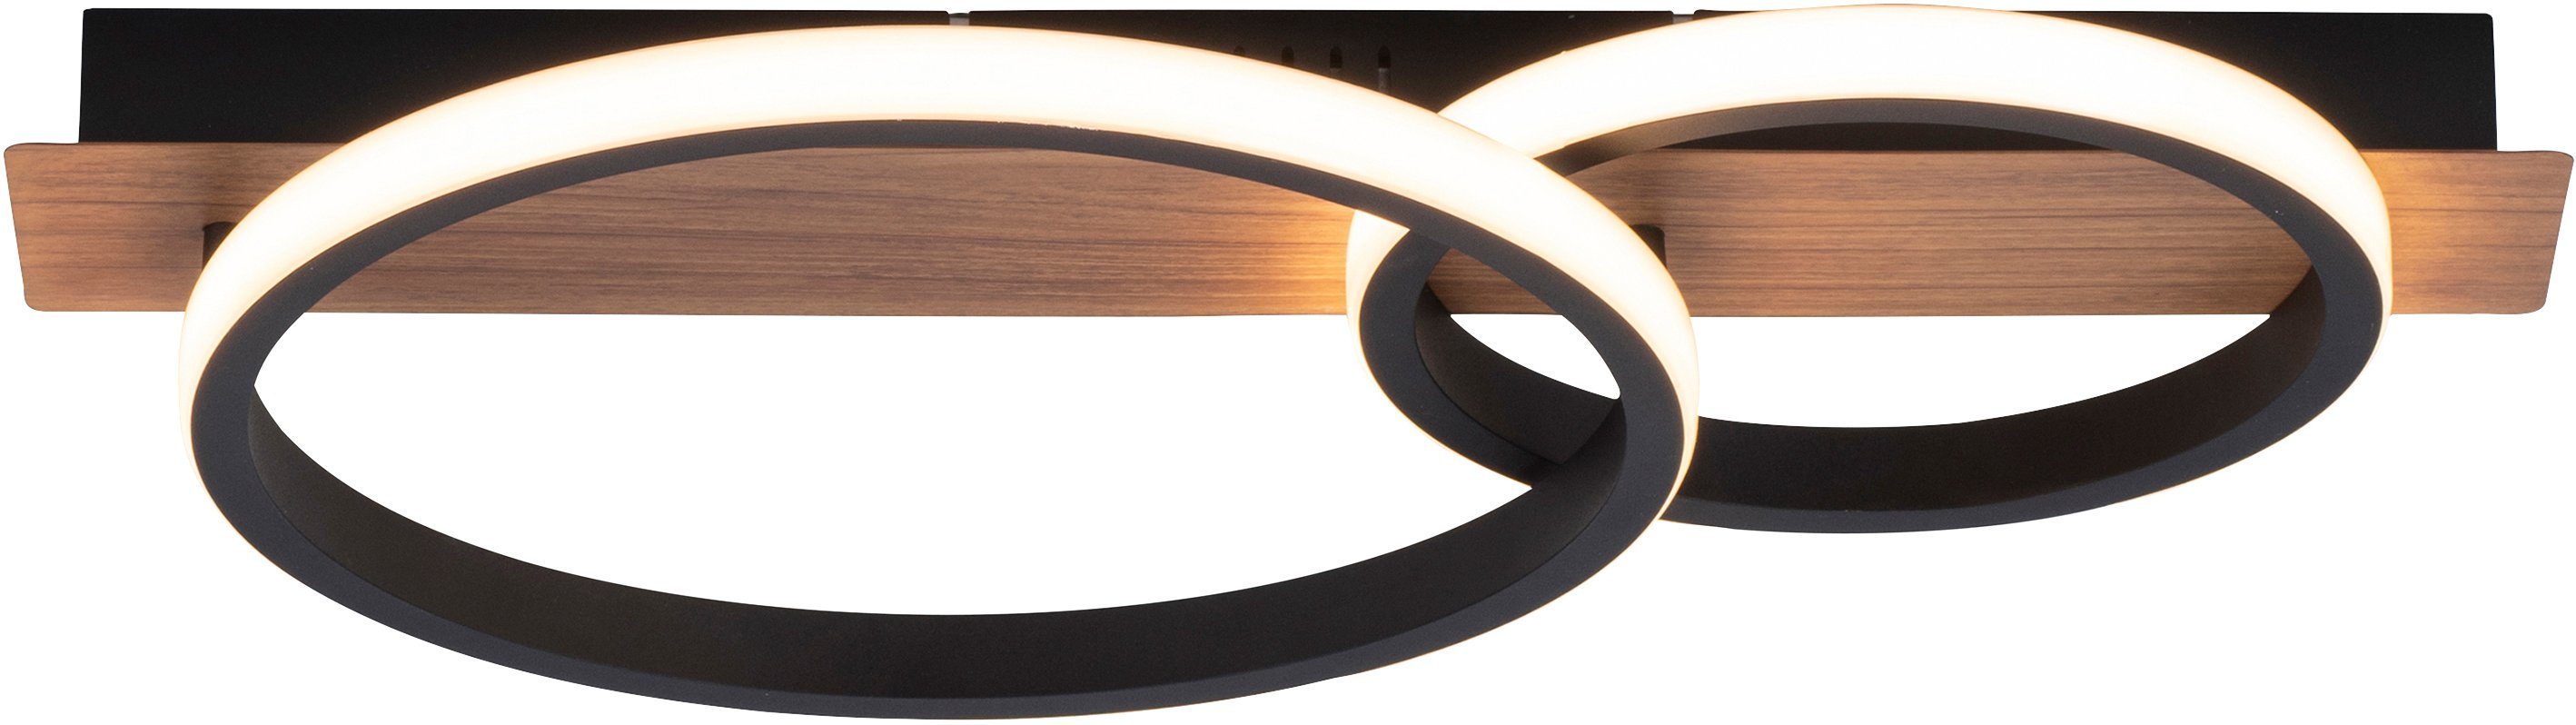 Molay, Warmweiß, fest integriert, Licht, LED Holz Dekor Home LED warmweißes Deckenleuchte Deckenlampe affaire